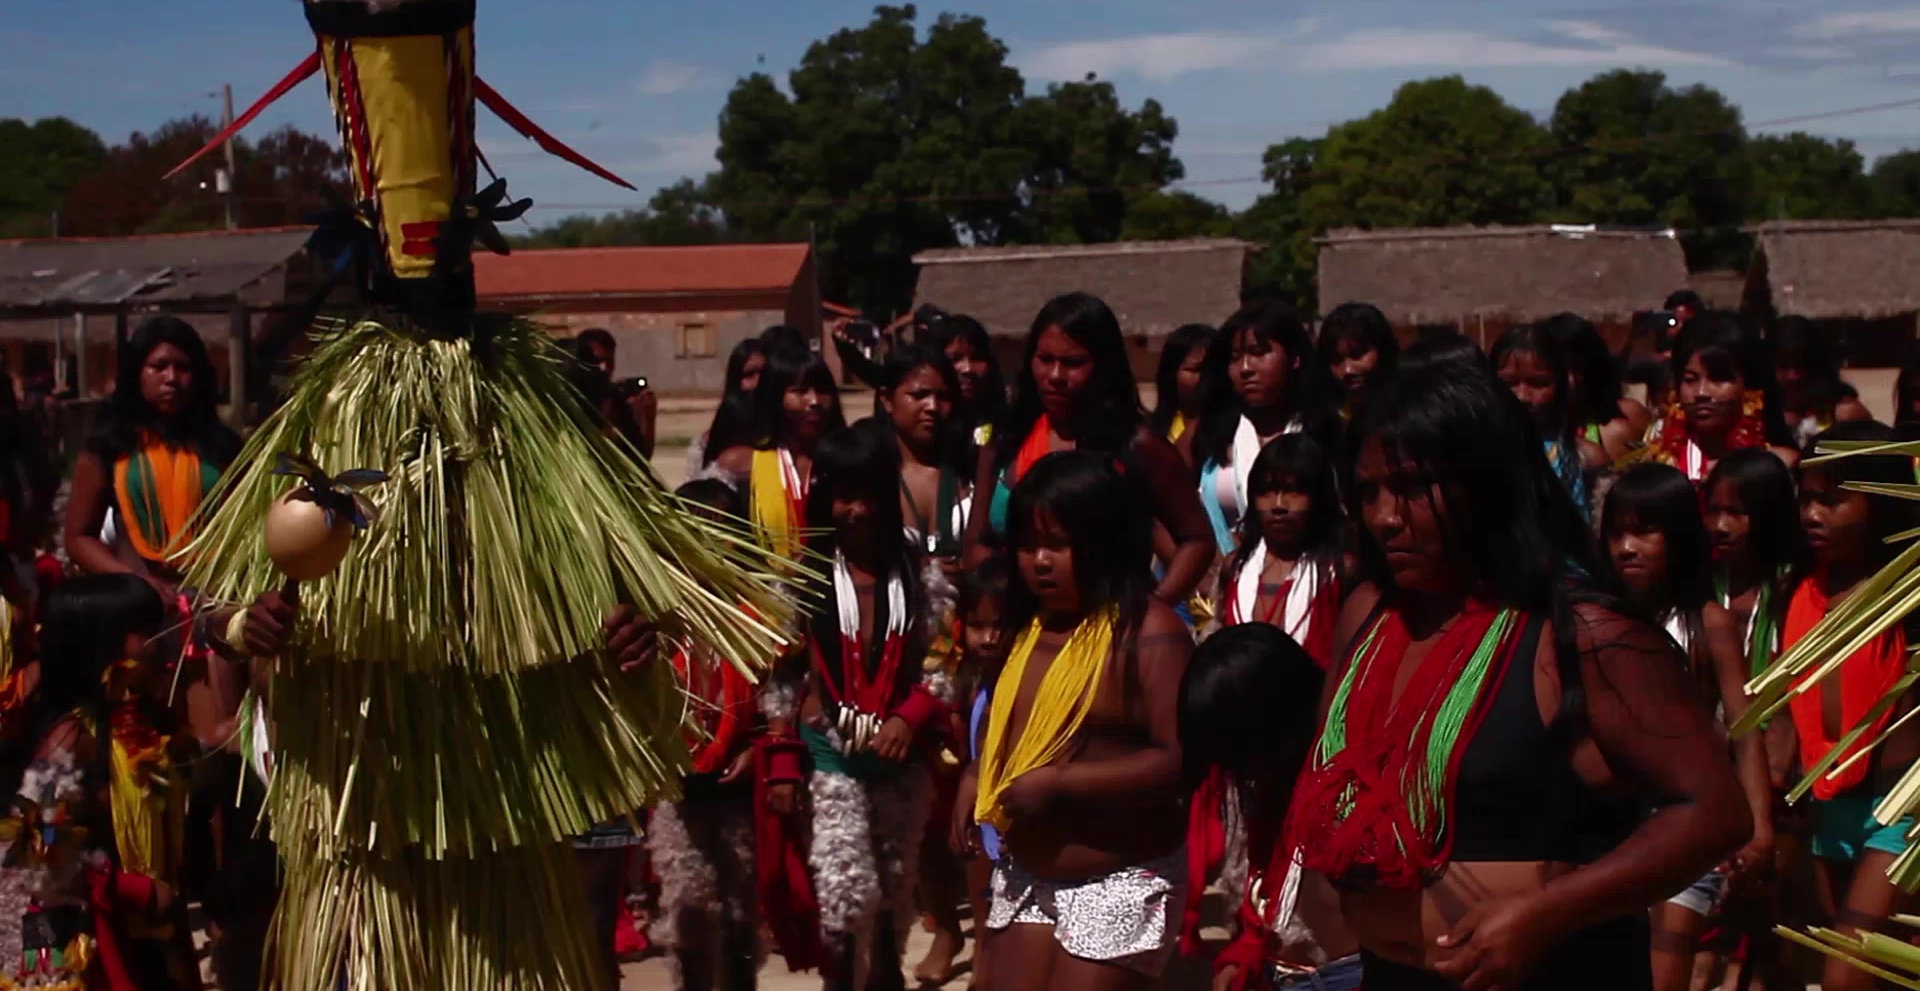 Cena do filme Apyãwa (Tapirapé) Iraxao Rarywa que exibe diversos indígenas, em sua maioria mulheres, vestindo roupas típicas de sua cultura, em volta de uma pessoa que usa uma vestimenta desfiada e toca um chocalho. O fundo é composto por casas, árvores e o céu azul.